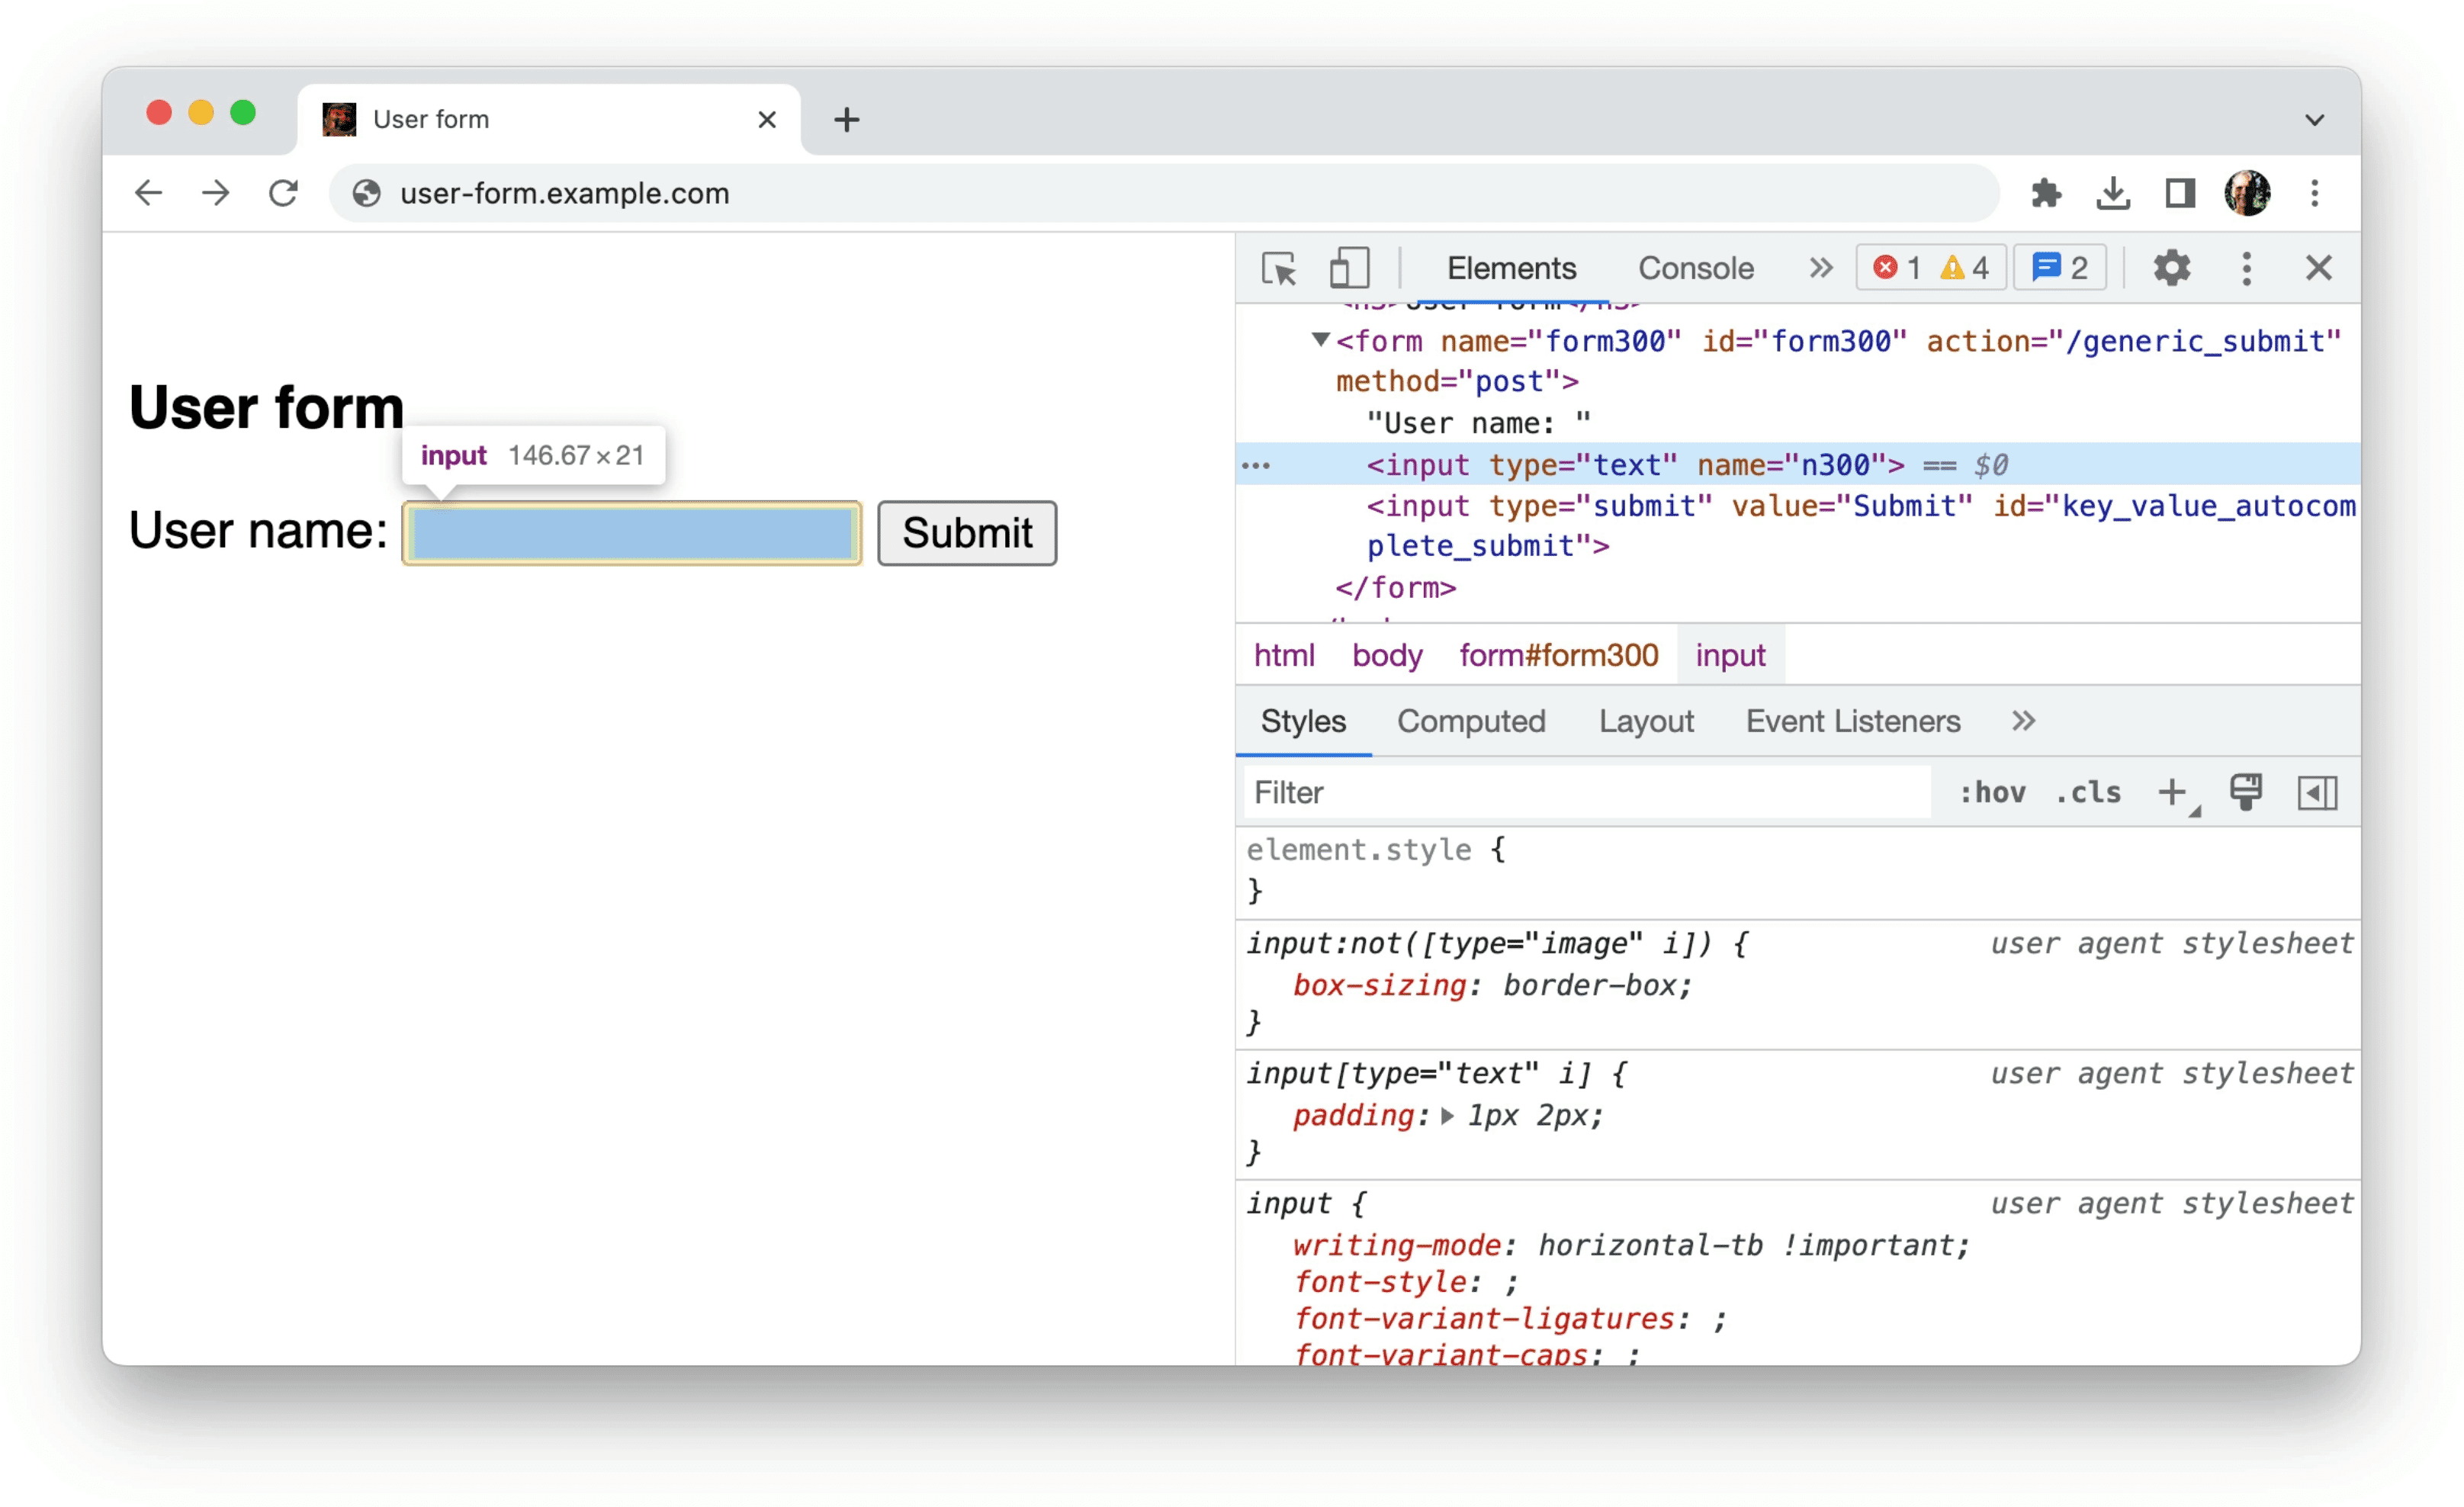 Narzędzia deweloperskie w Chrome wyświetlające informacje o nieuporządkowanych danych w formie, jak pokazano w poprzednim przykładzie: pojedyncze dane wejściowe zawierające tylko atrybuty type=text i name=n300.